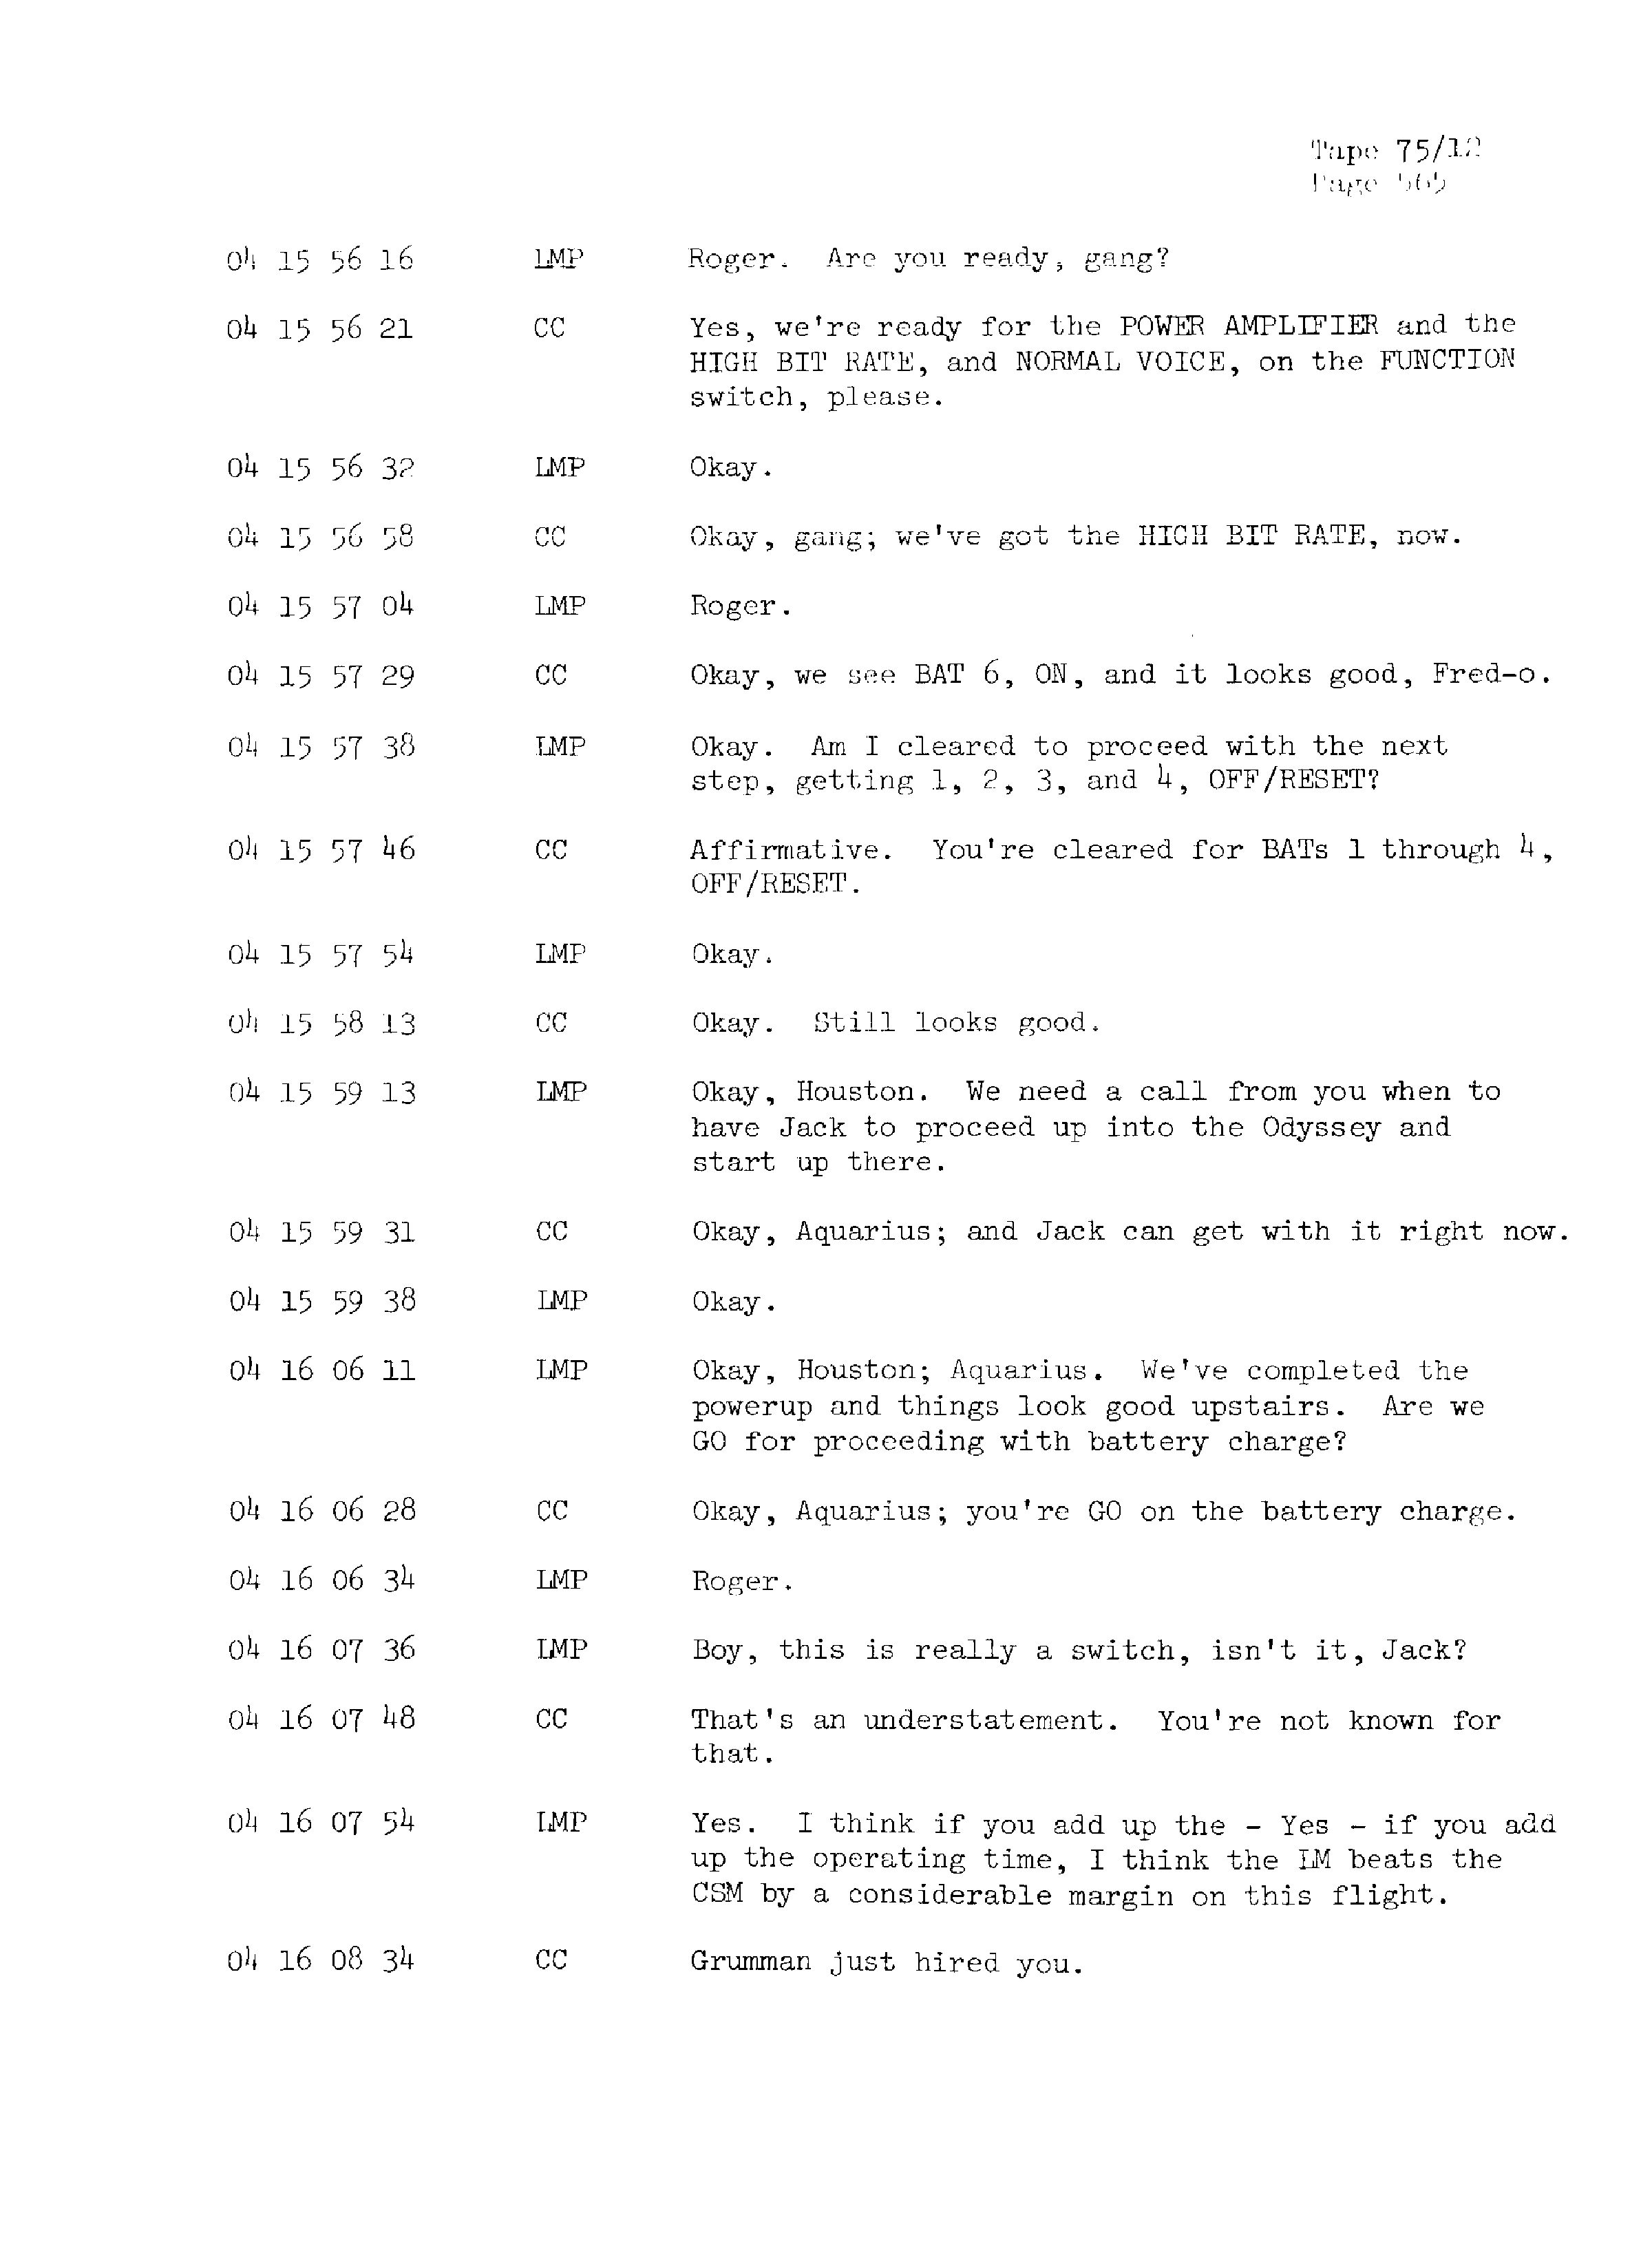 Page 572 of Apollo 13’s original transcript